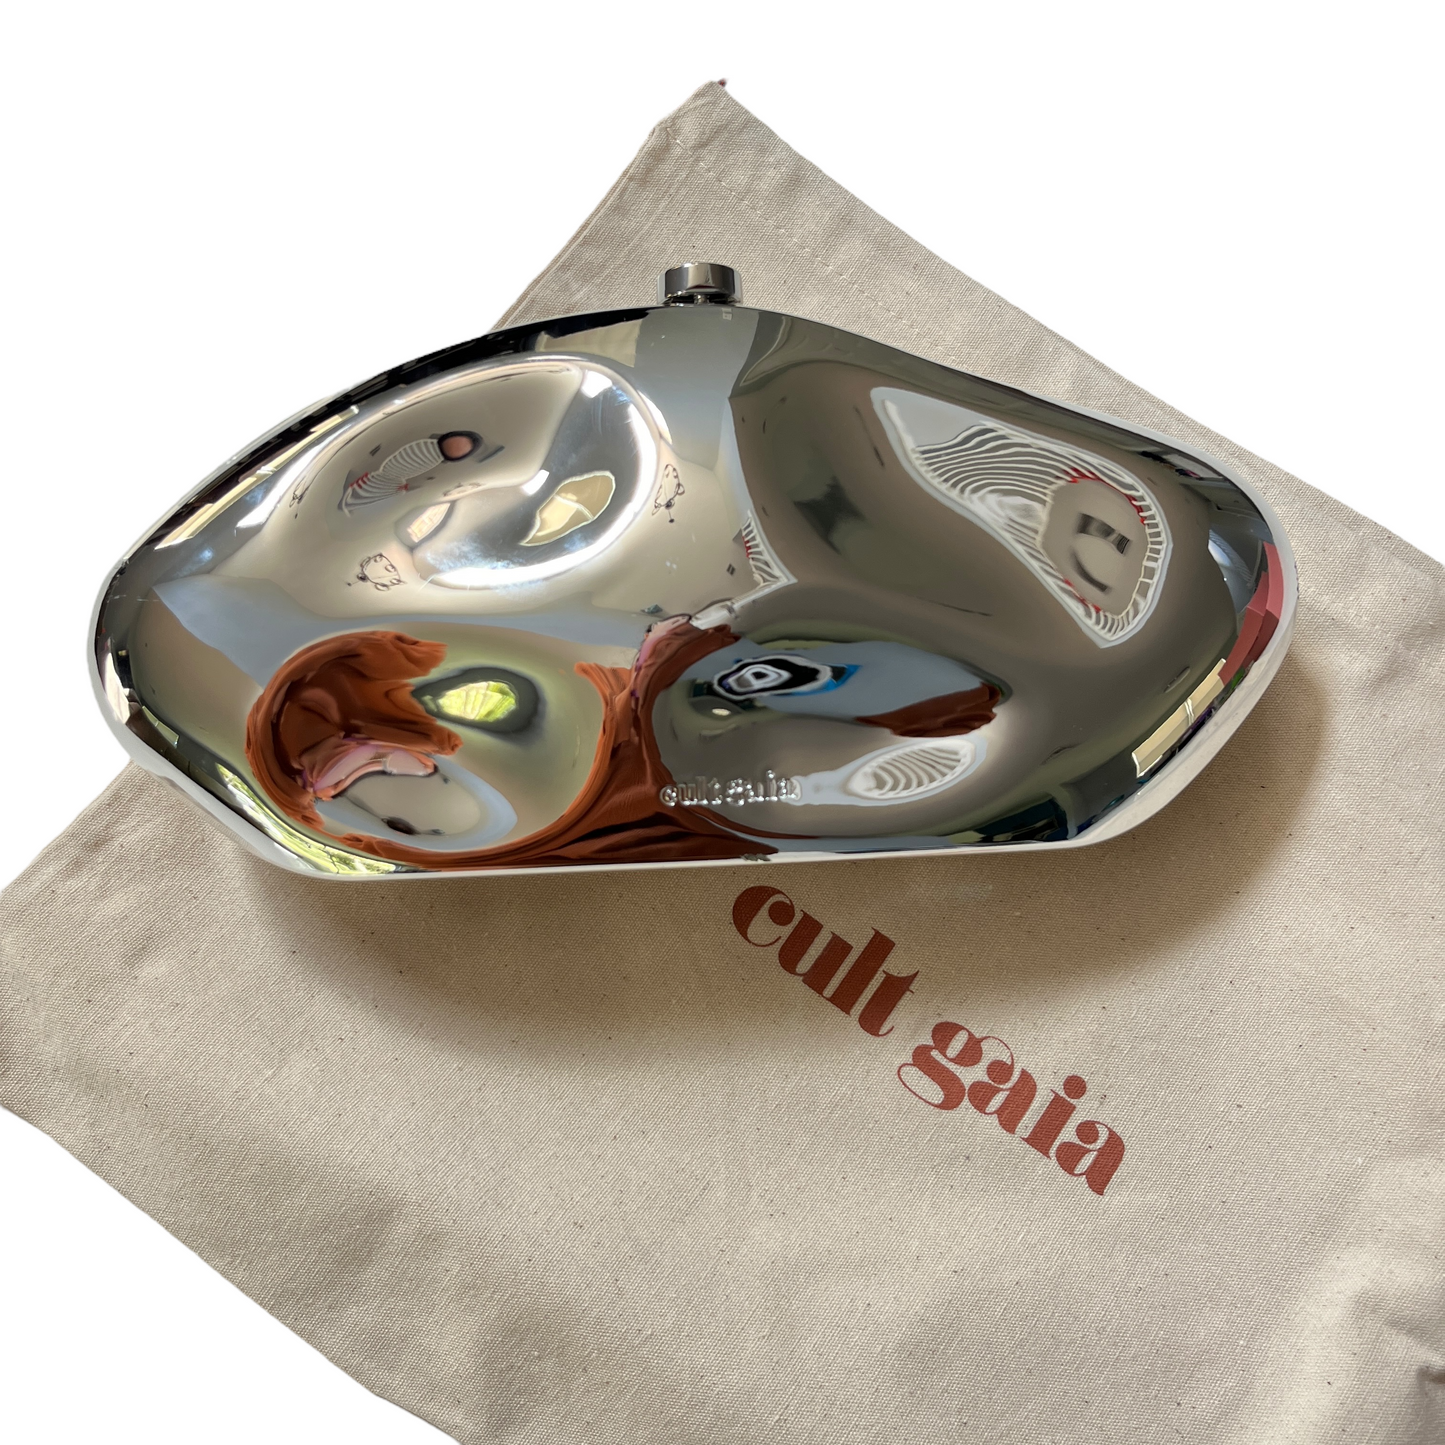 Cult Gaia The Caldera Clutch in Shiny Silver